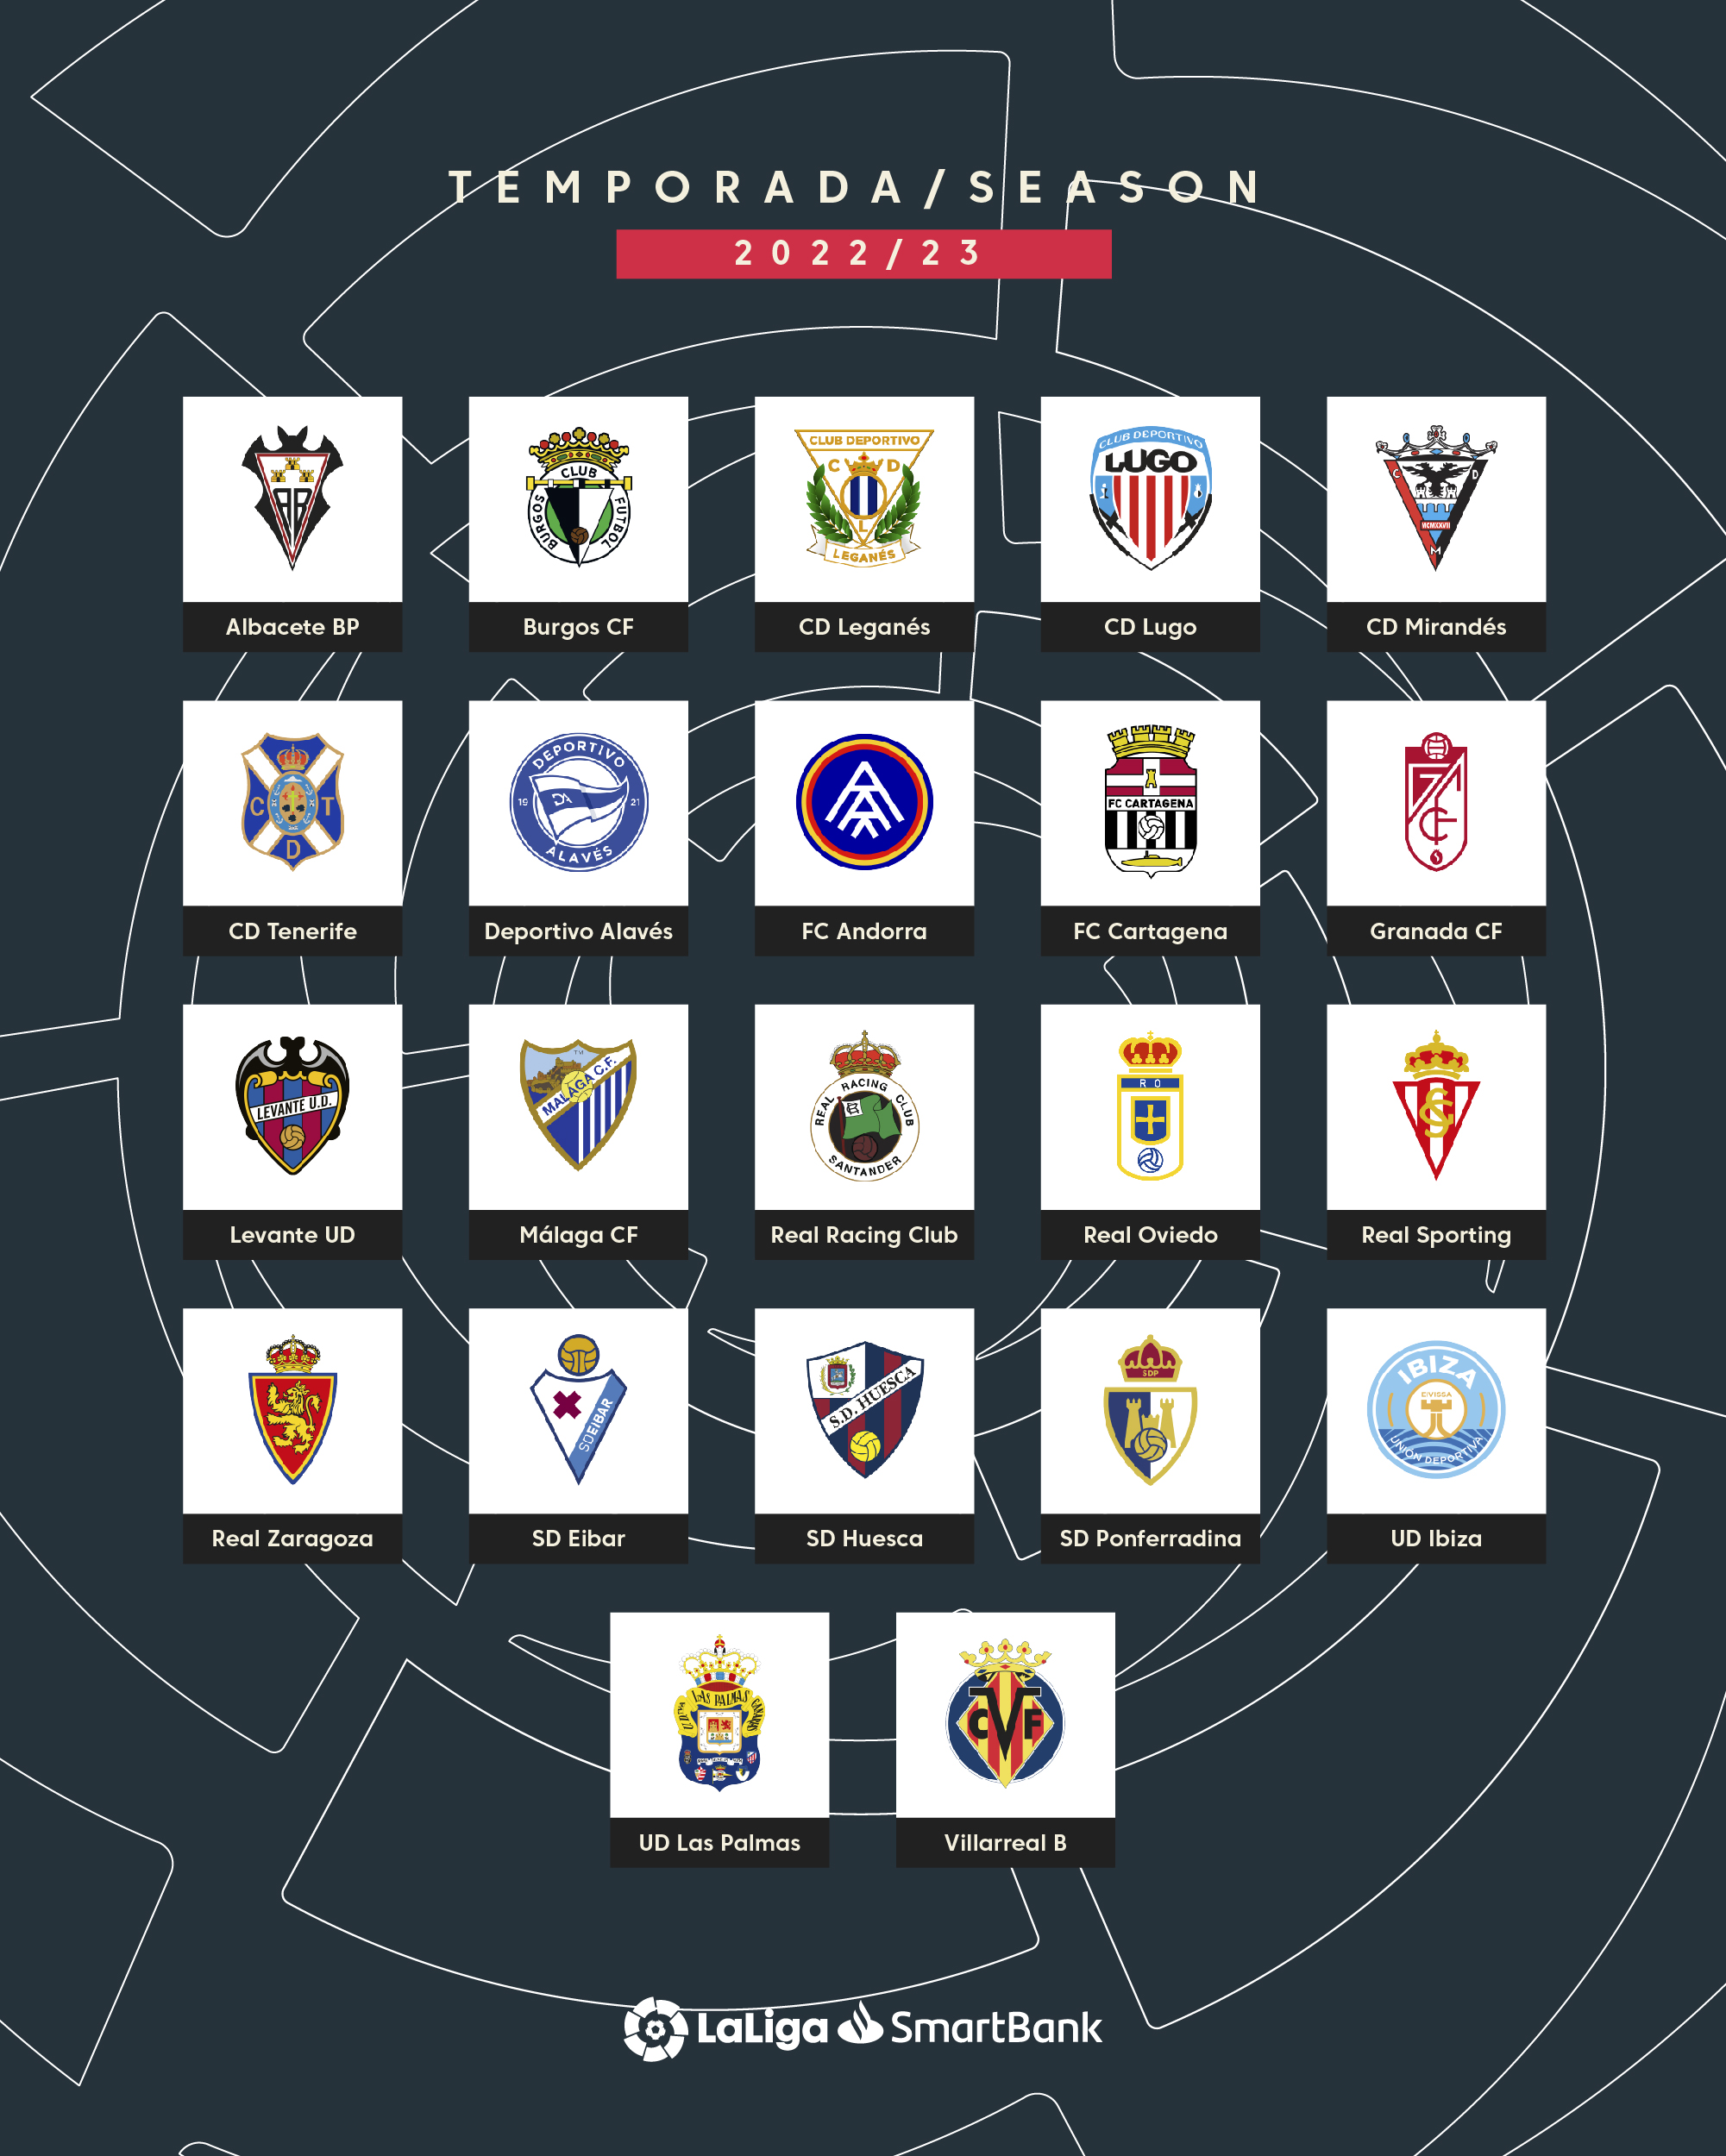 on Twitter: "🍿🔜⚽ 𝐞𝐪𝐮𝐢𝐩𝐨𝐬 𝐝𝐢𝐬𝐩𝐮𝐞𝐬𝐭𝐨𝐬 𝐚 ✓🗒 ¡Esta es la completa de los clubes que participarán en #LaLigaSmartBank 2022/23! https://t.co/xNxXC4dN8v" / Twitter